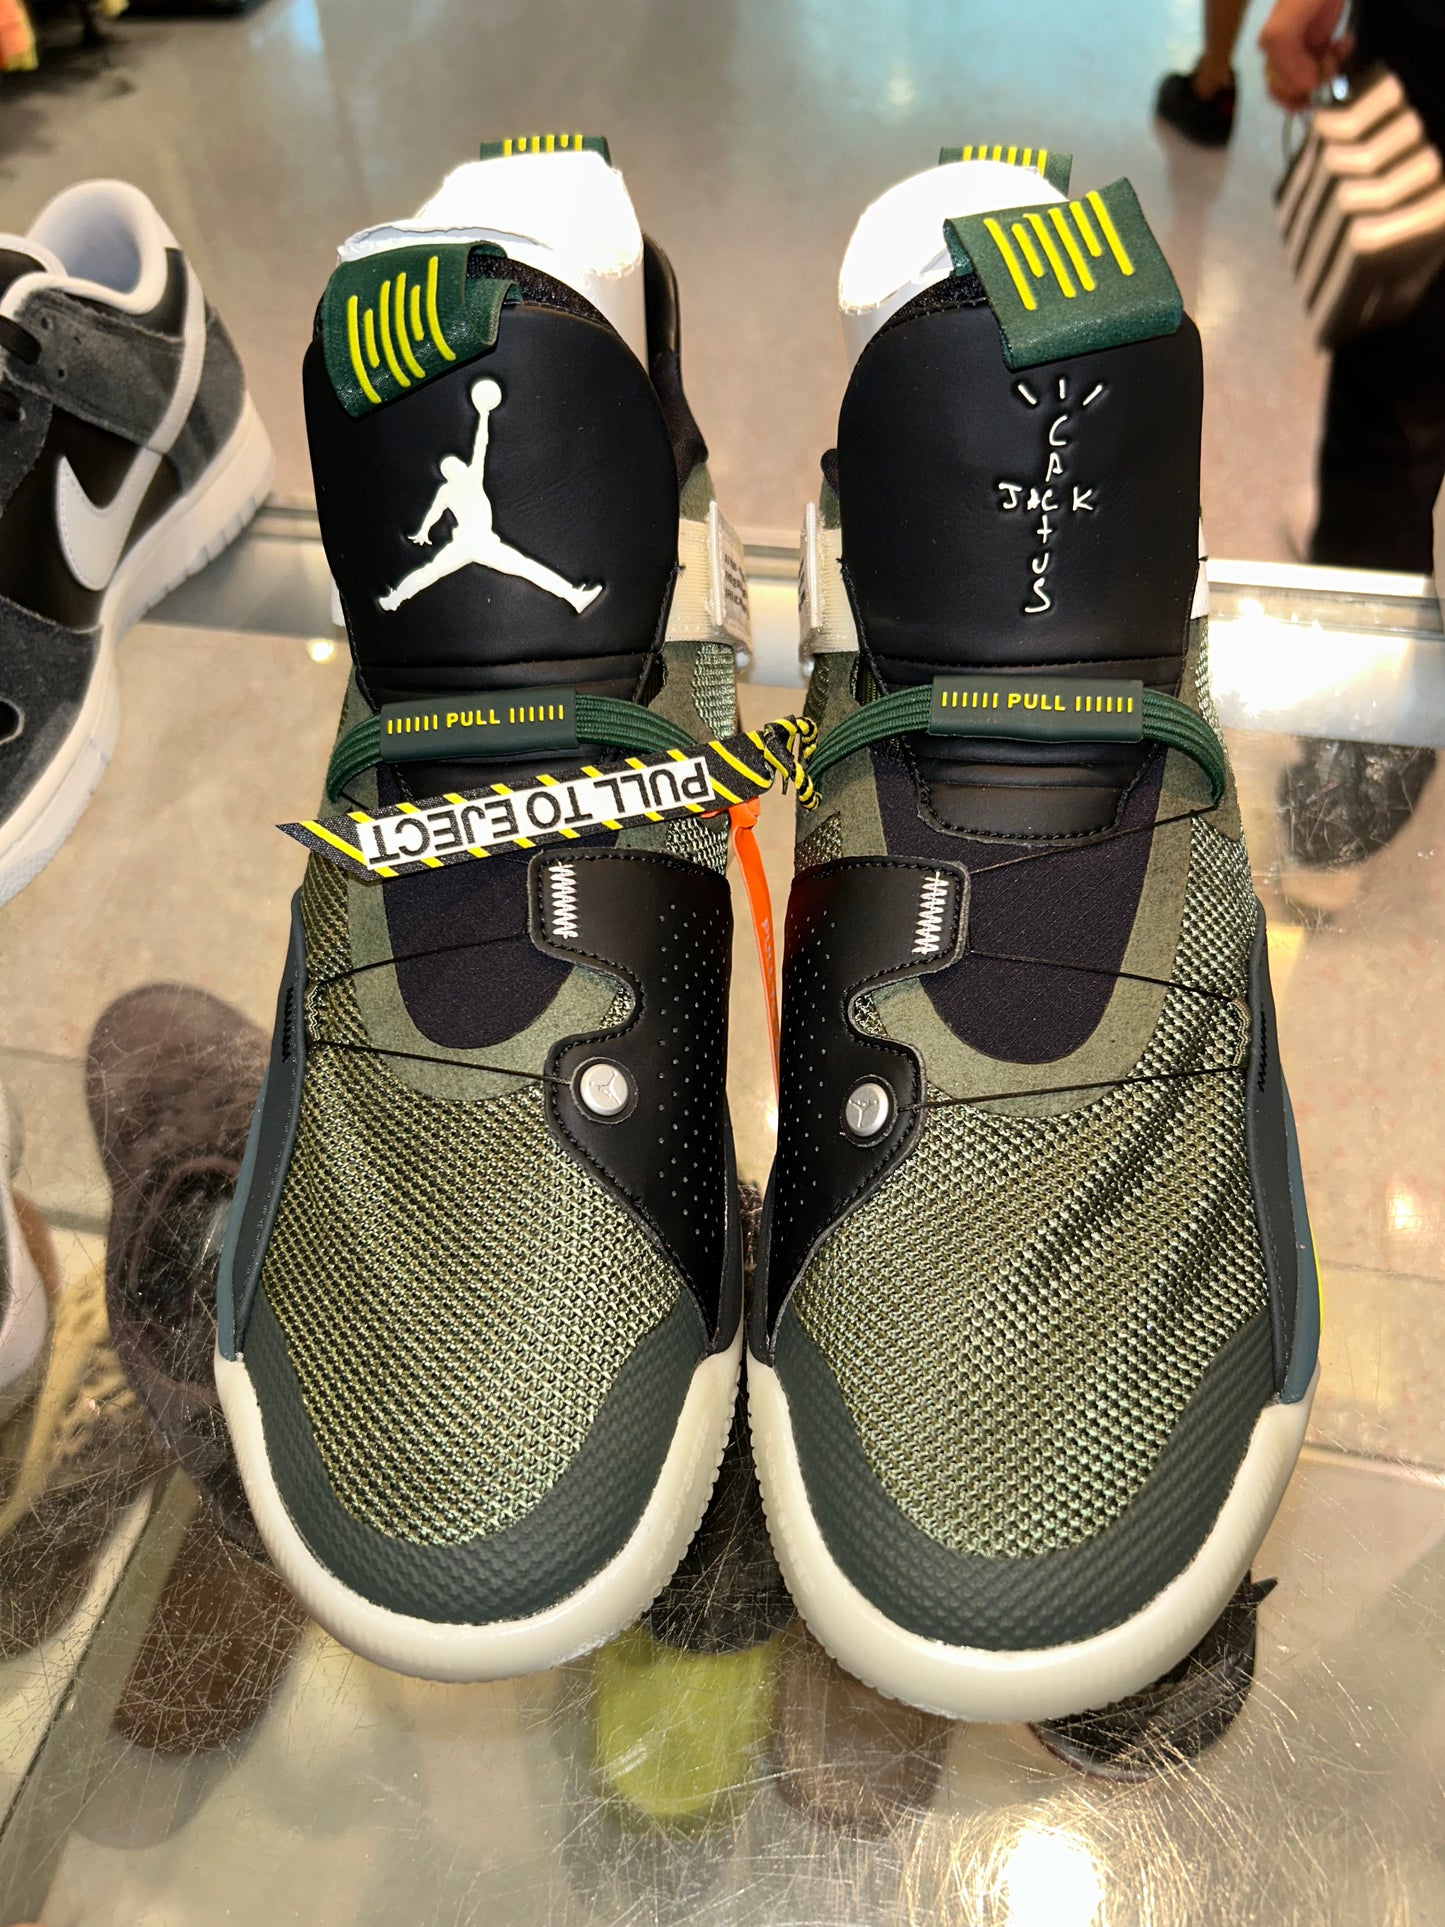 Size 10.5 Air Jordan 33 “Travis Scott Brand New (Mall)